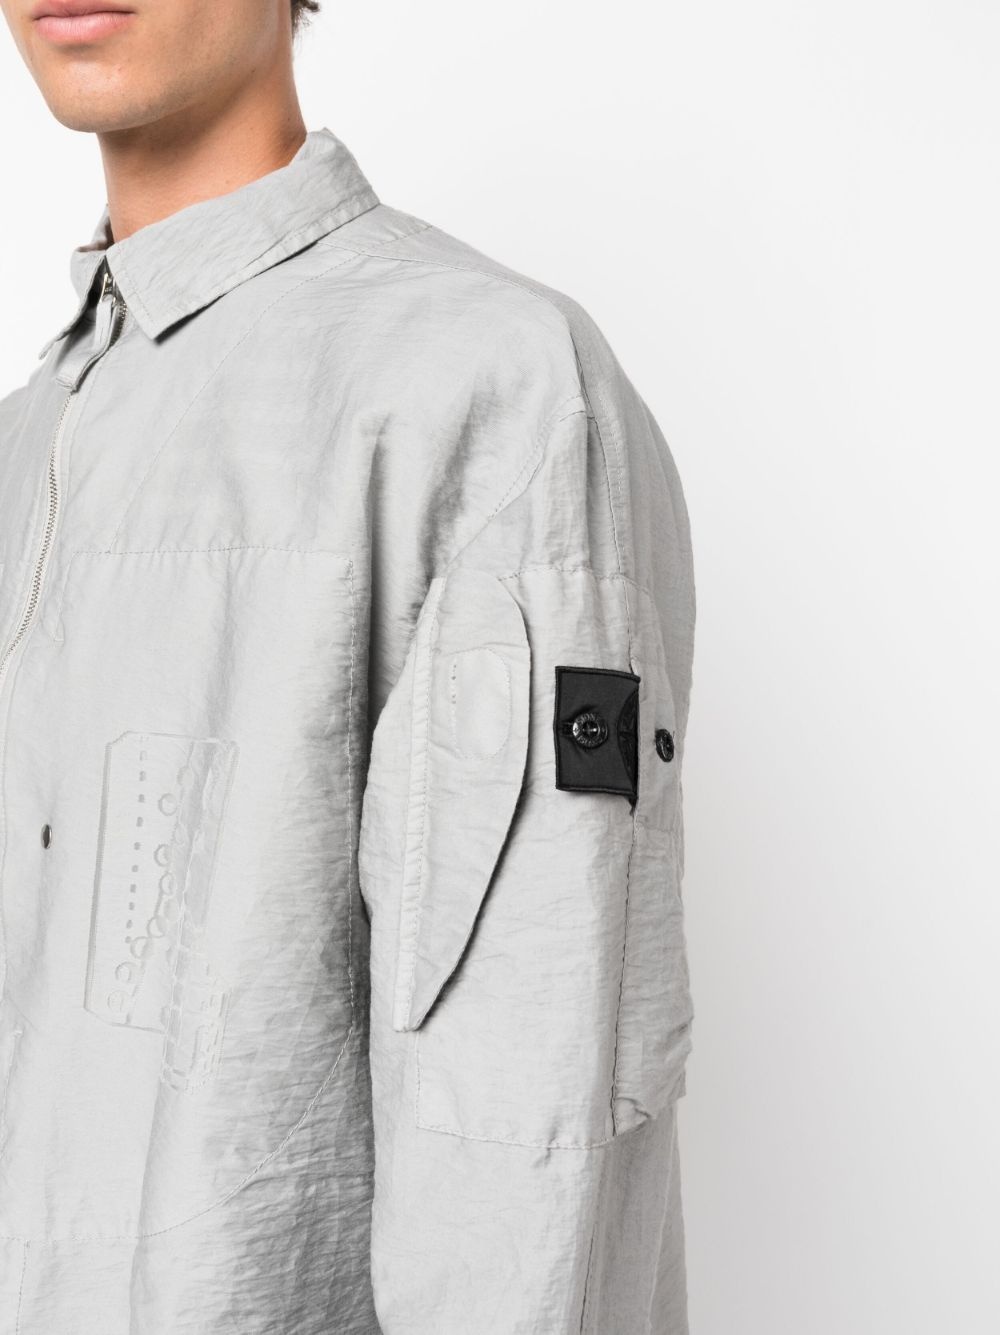 Compass-patch shirt jacket - 5